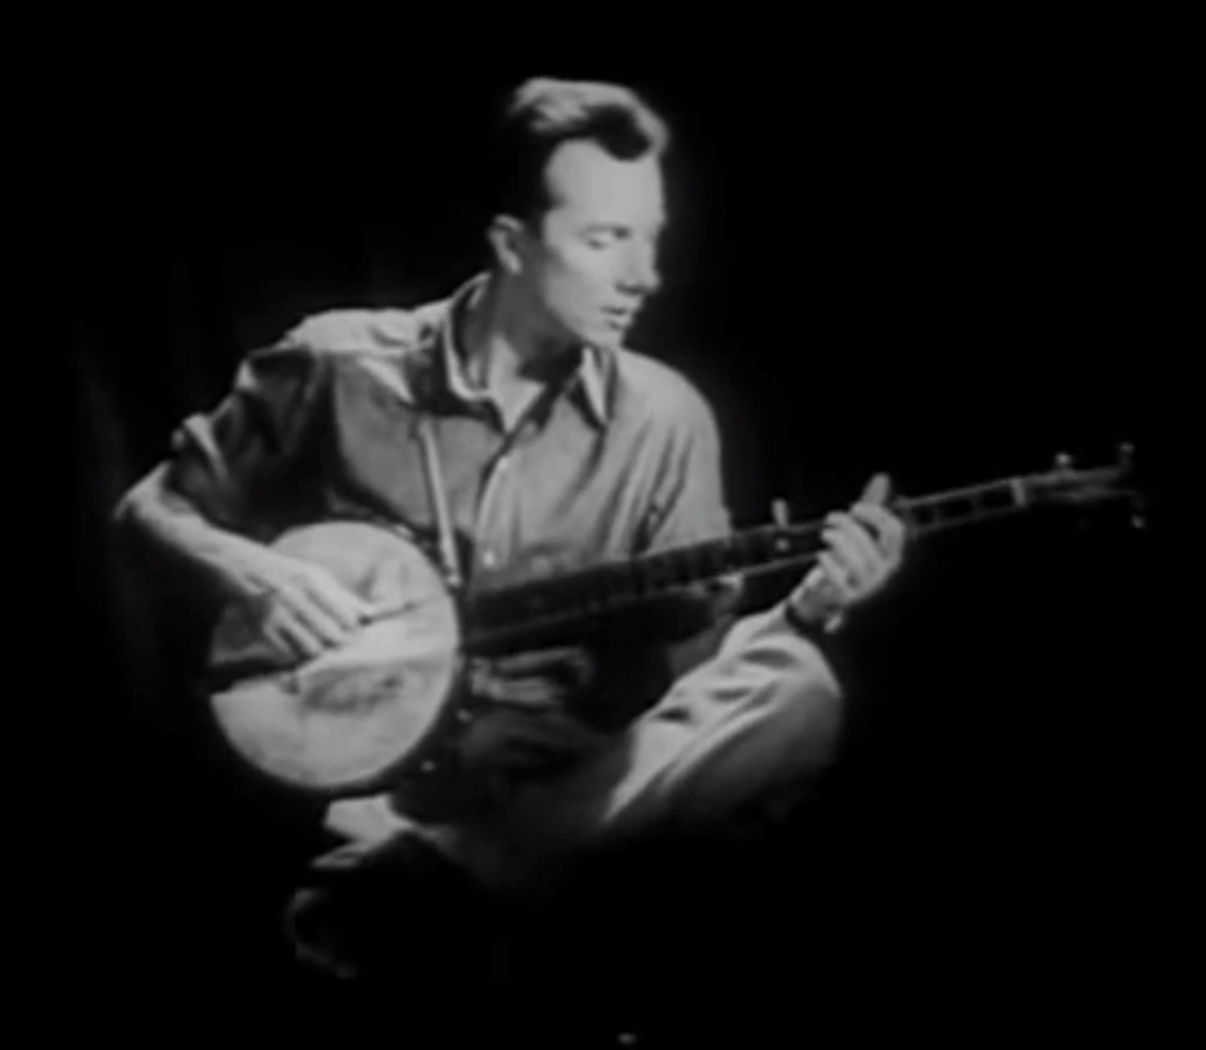 Man playing banjo.